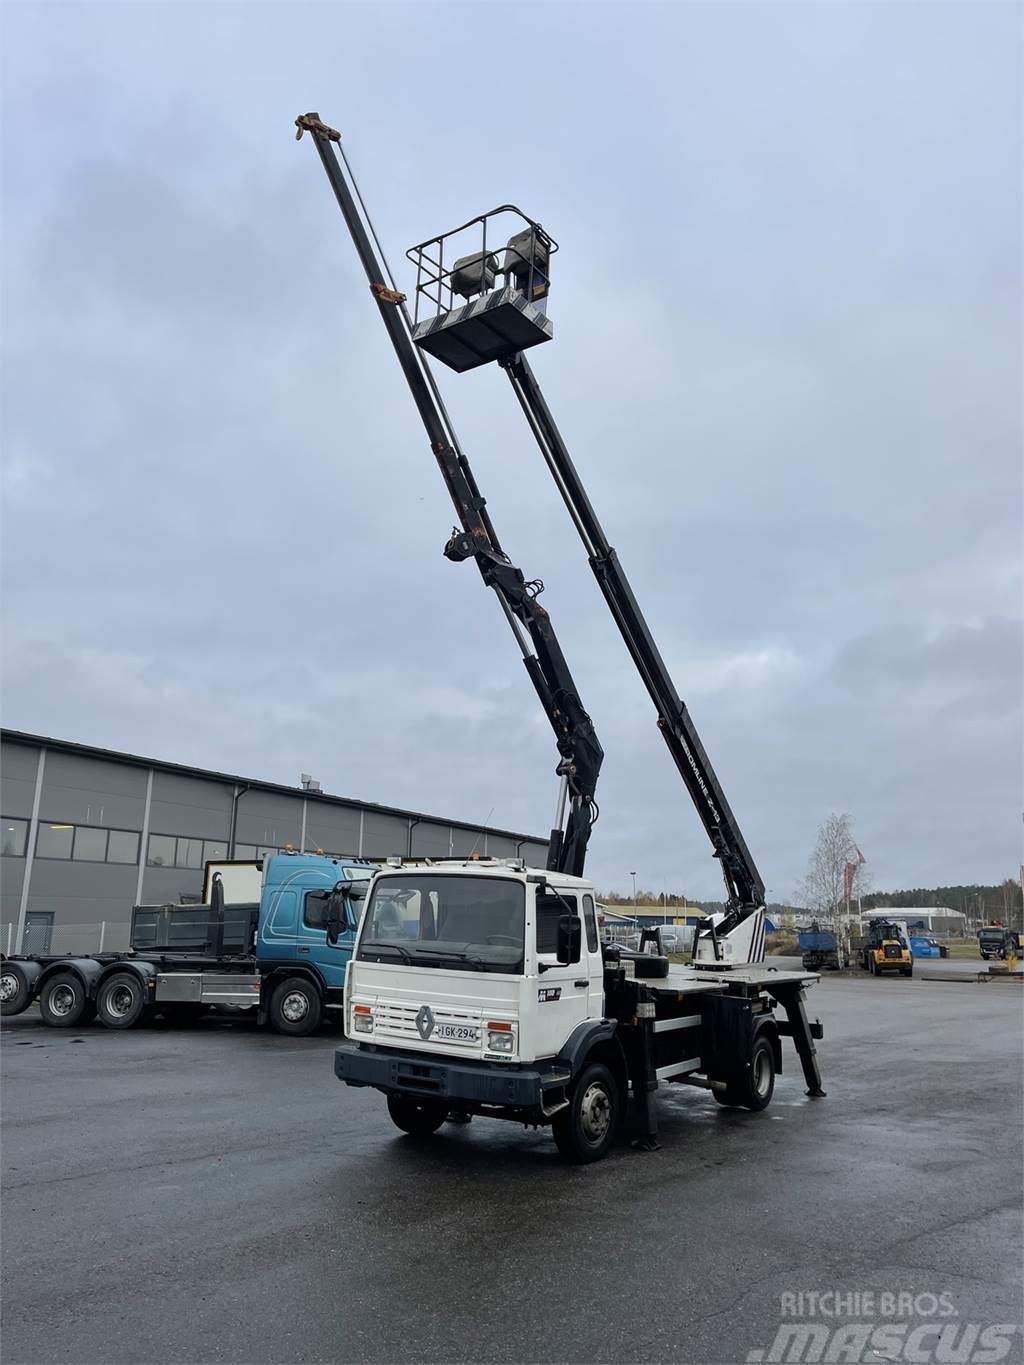 Renault - Truck mounted cranes